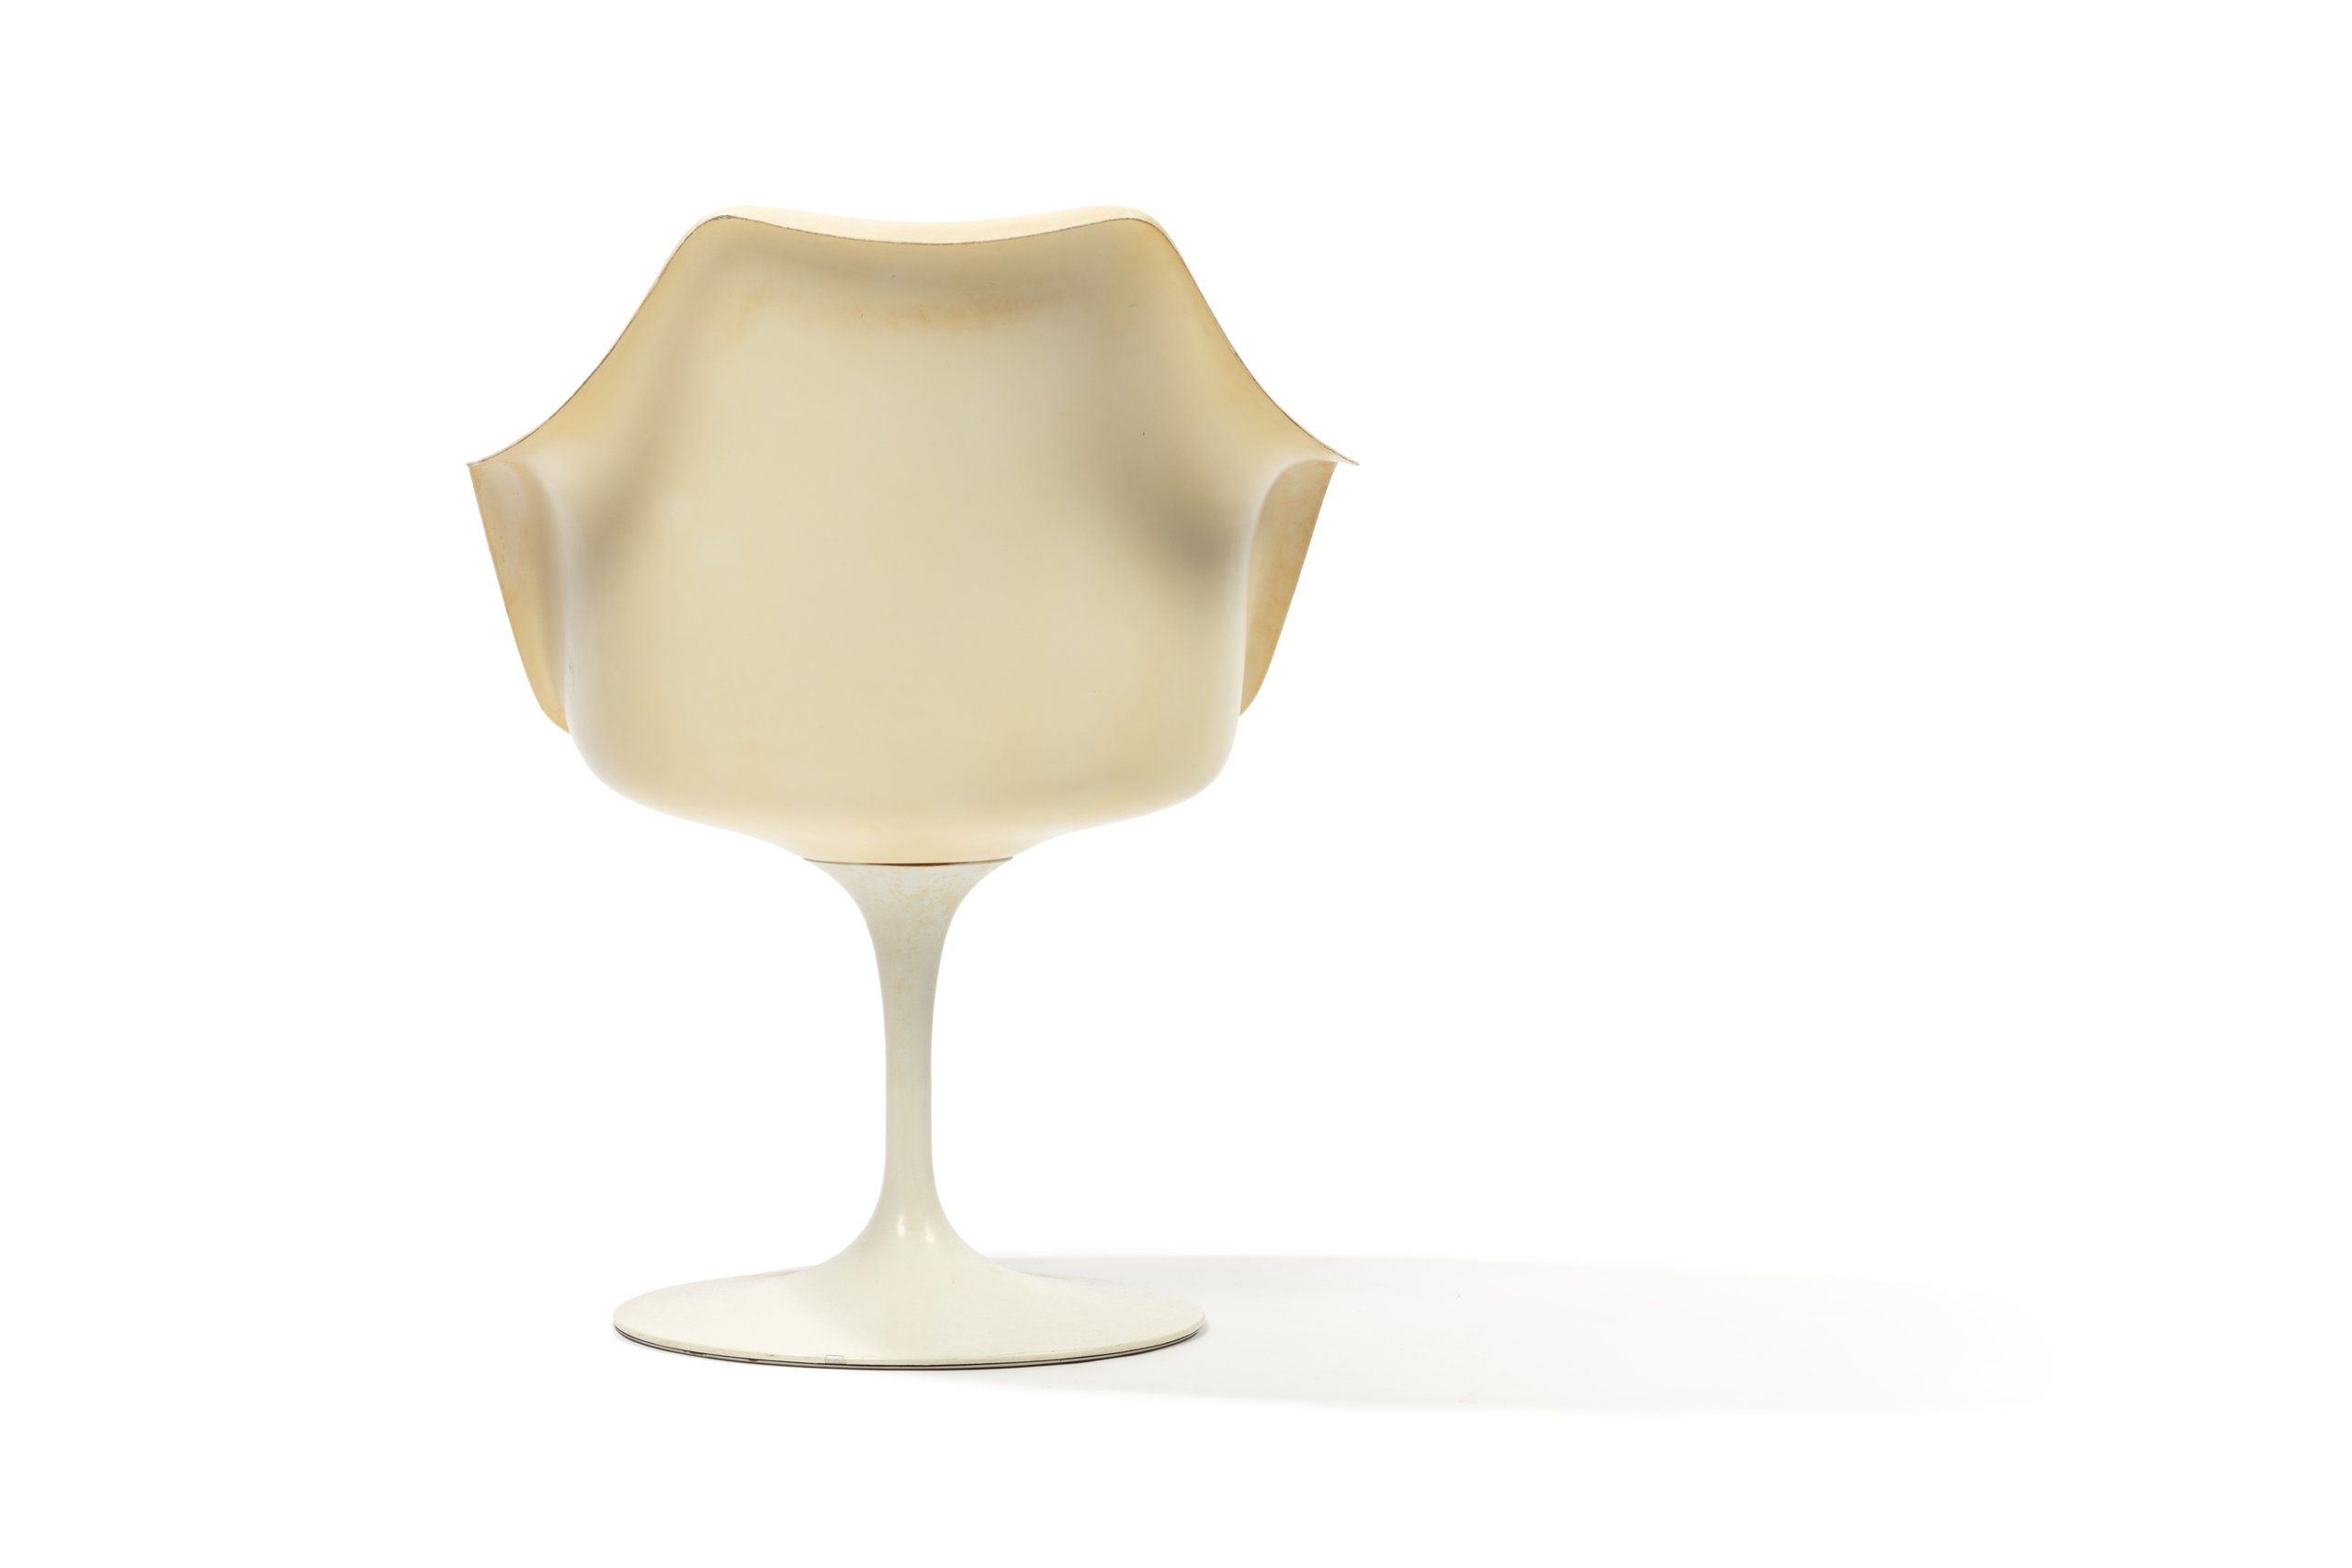 'Tulip' chair designed by Eero Saarinen